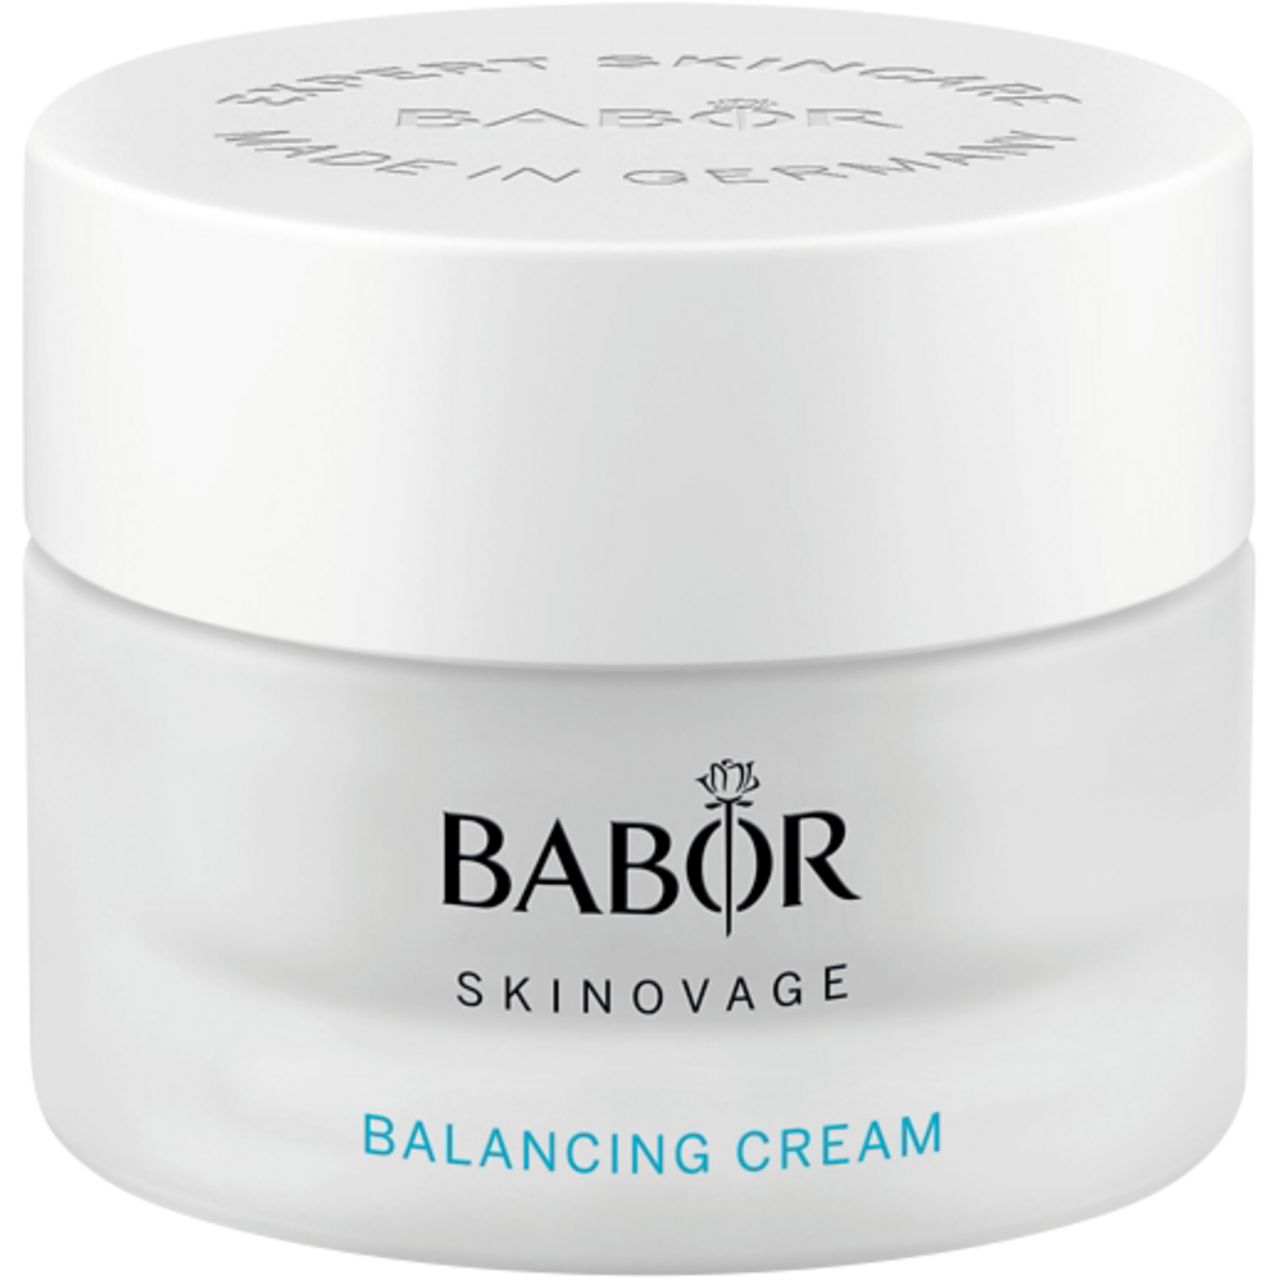 Babor, Skinovage Balancing Cream